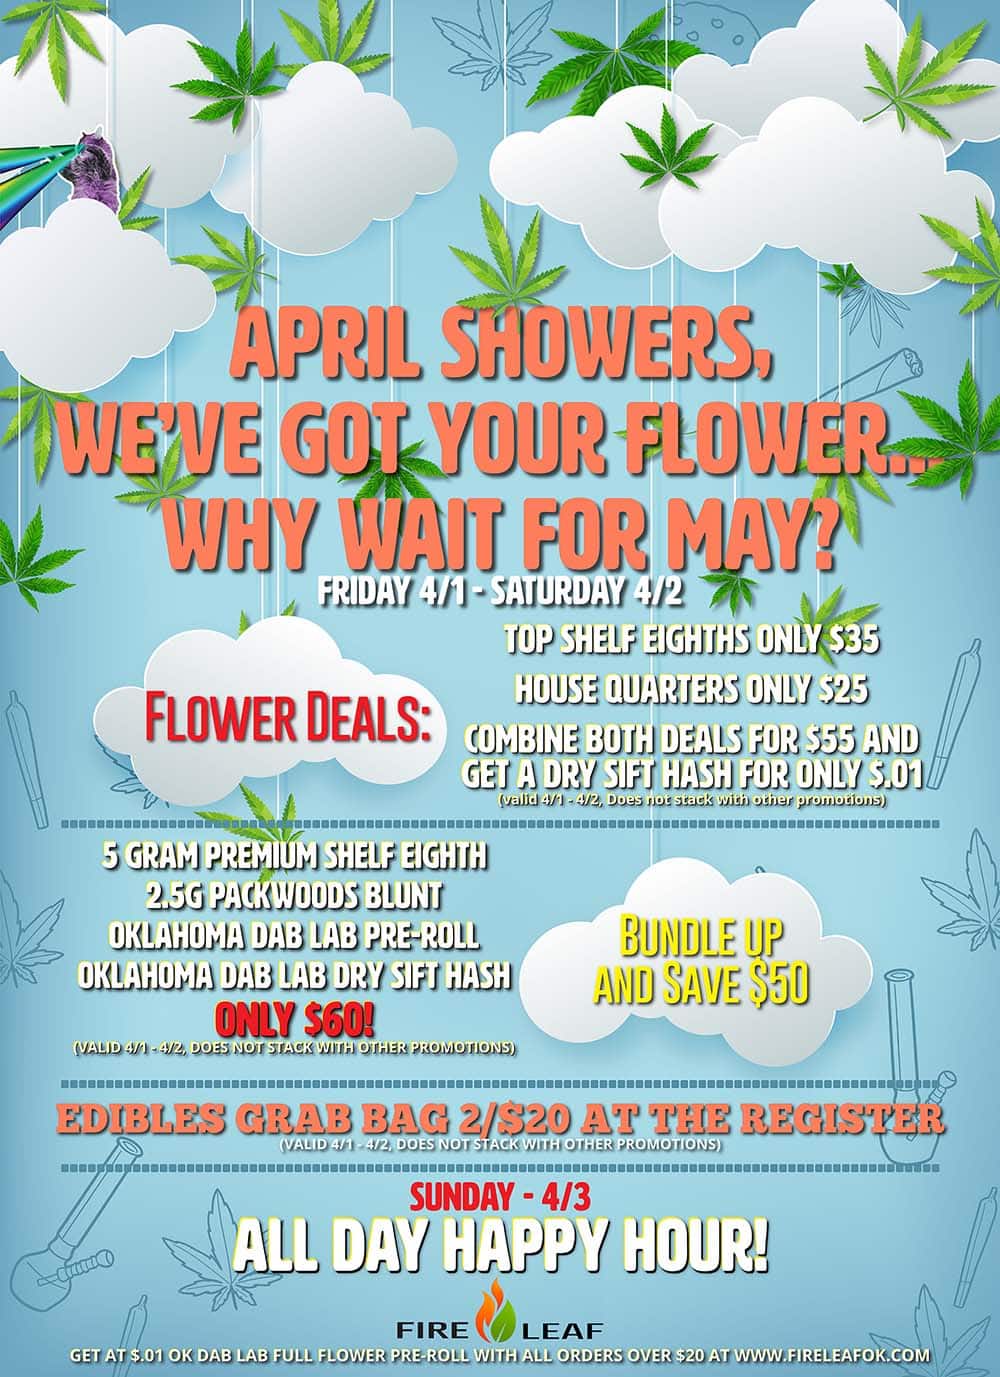 April Showers, We’ve got the flower 4/1 – 4/3